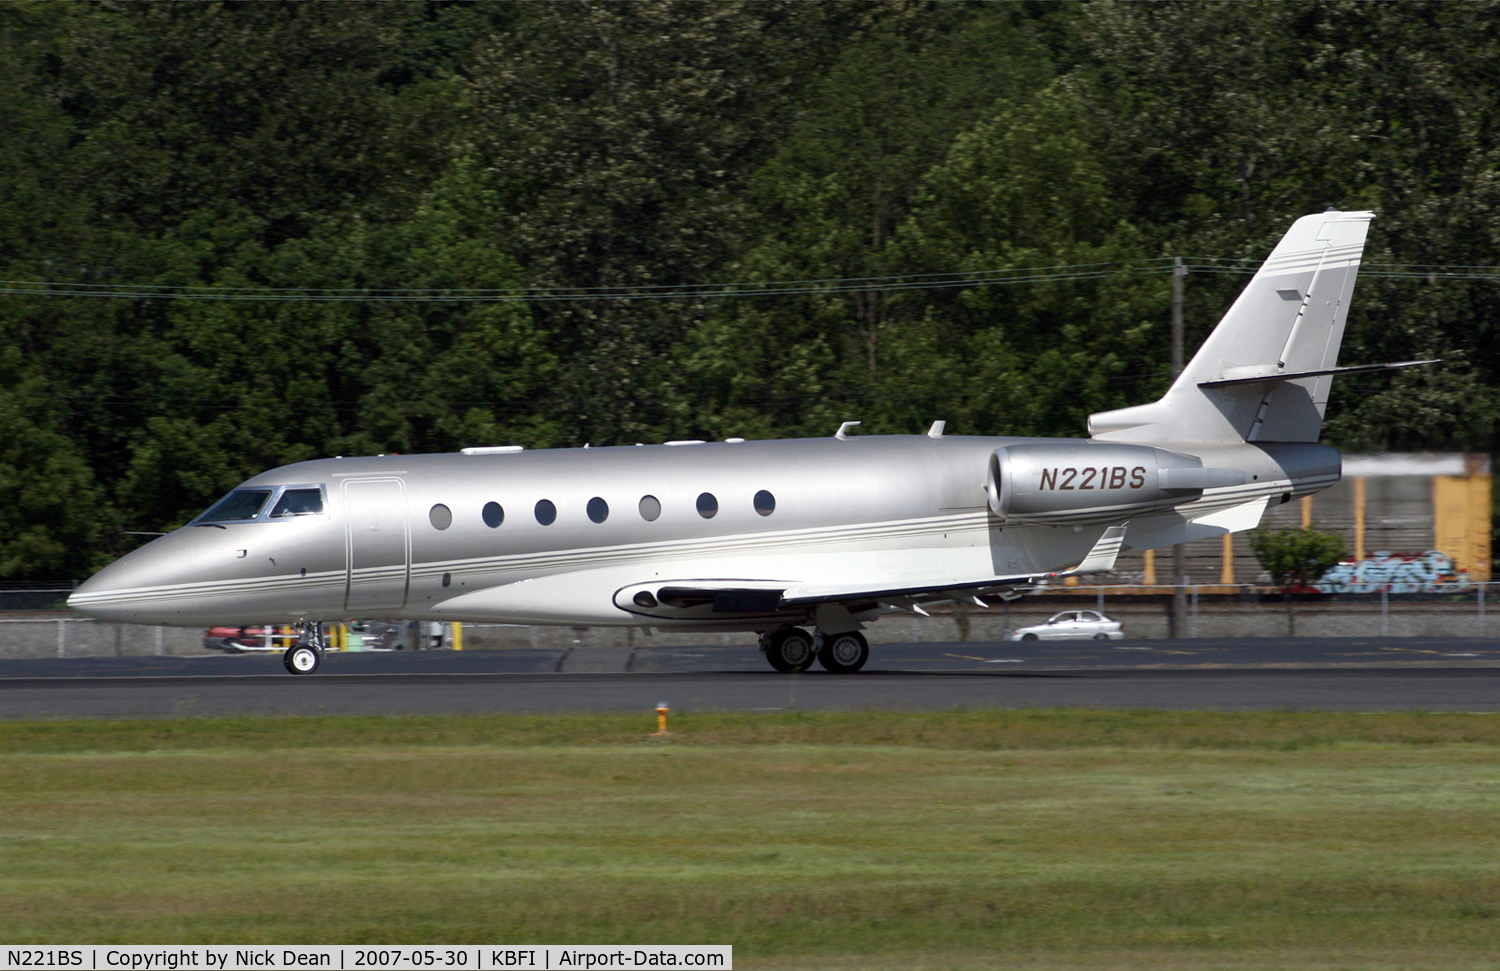 N221BS, 2005 Gulfstream Aerospace G200 C/N 110, KBFI